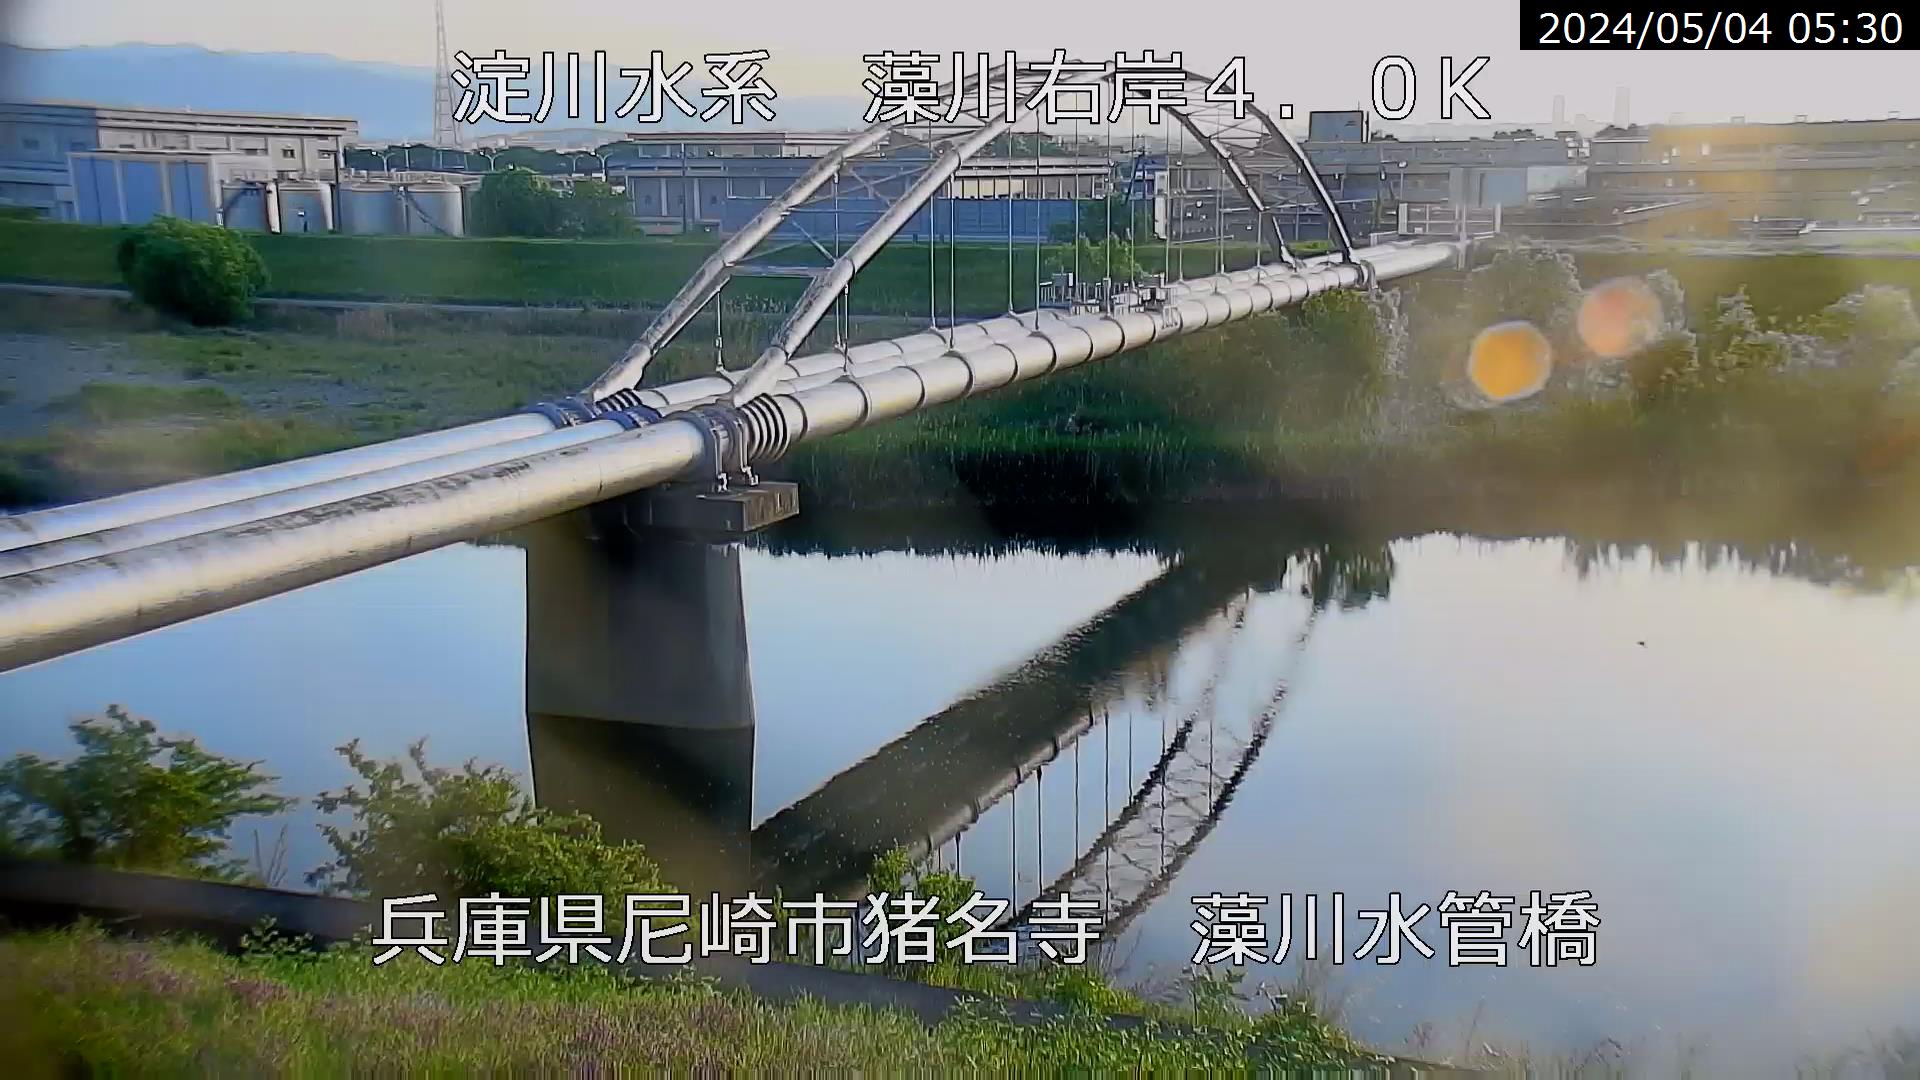 兵庫県の河川ライブカメラ｢藻川 尼崎市猪名寺｣のライブ画像